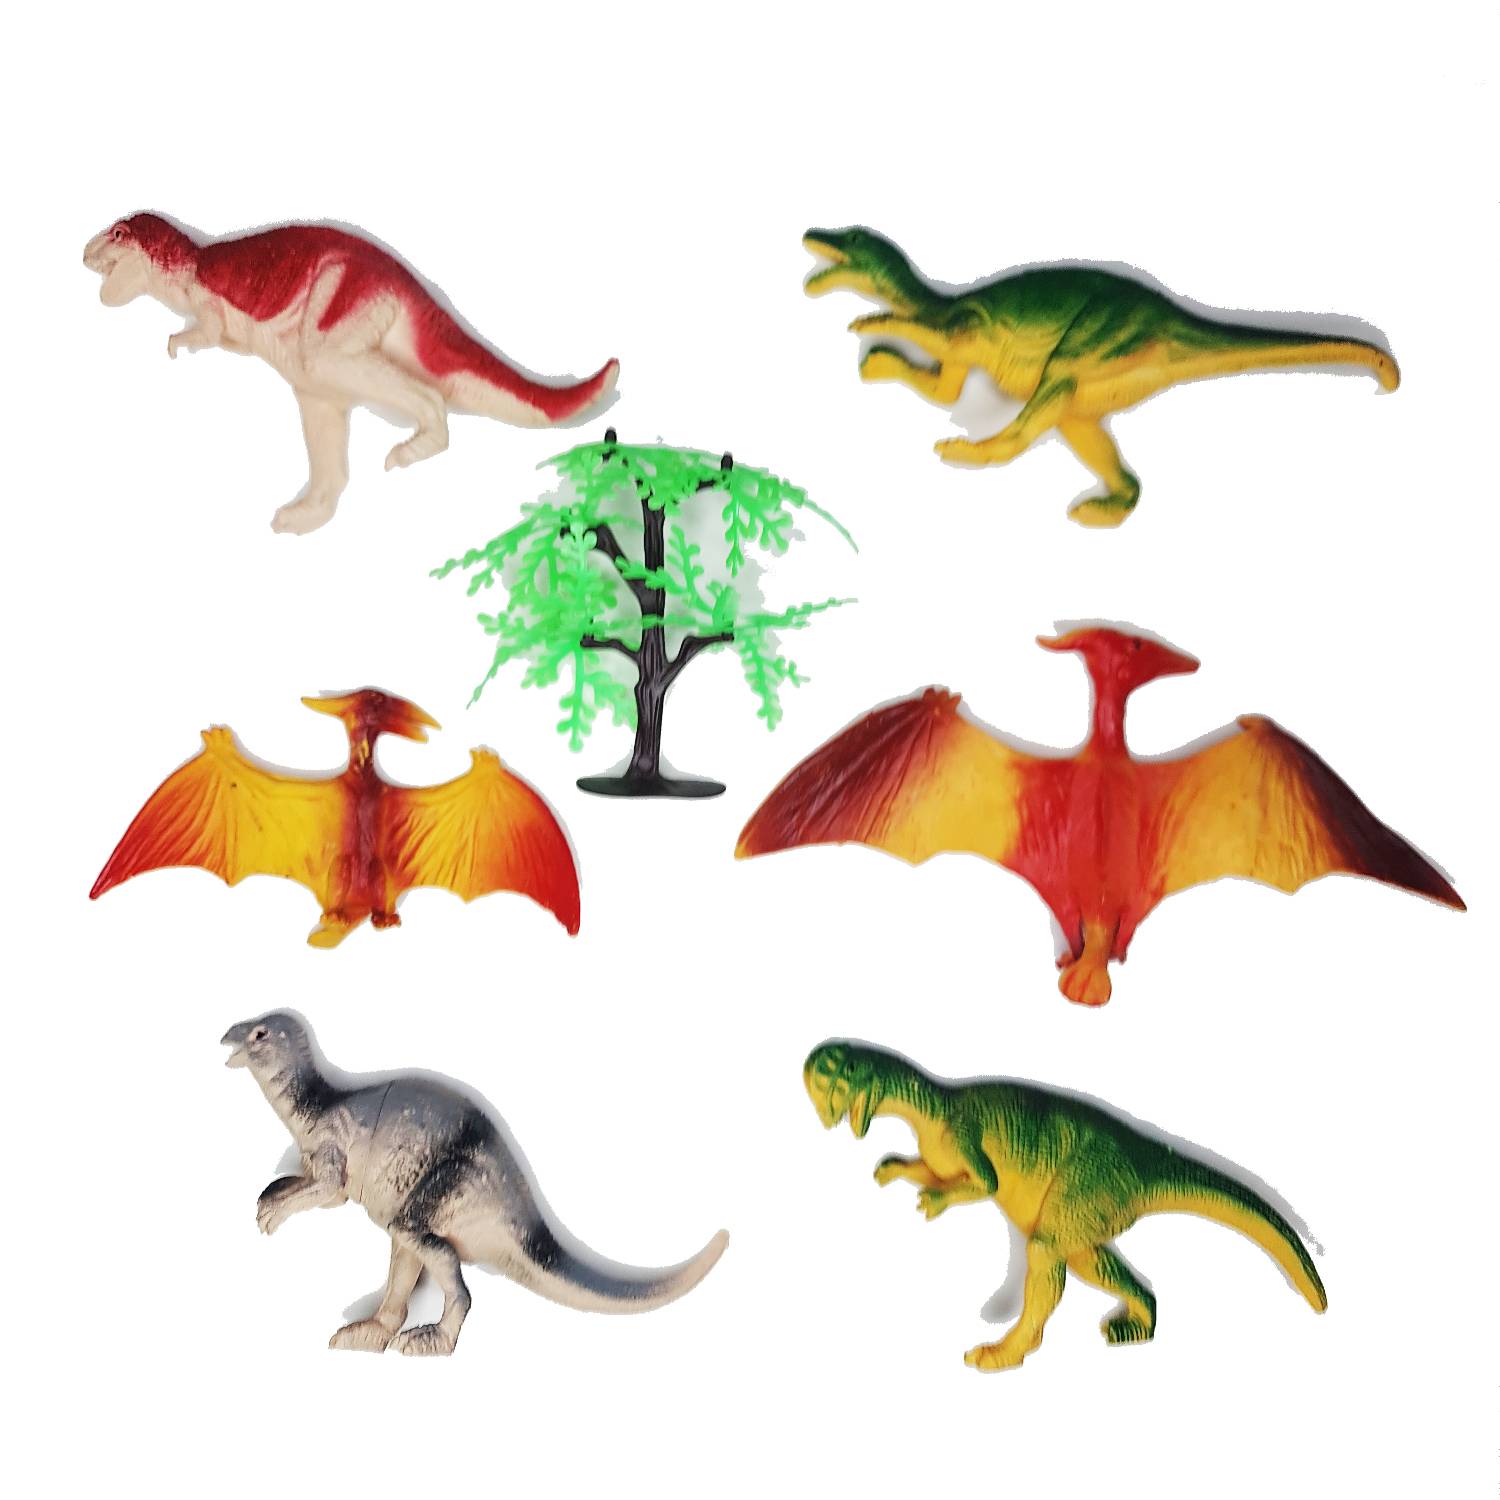 BIGBAMSPACE Dinosaurio Dinosaurios Juguetes 6 Figuras S